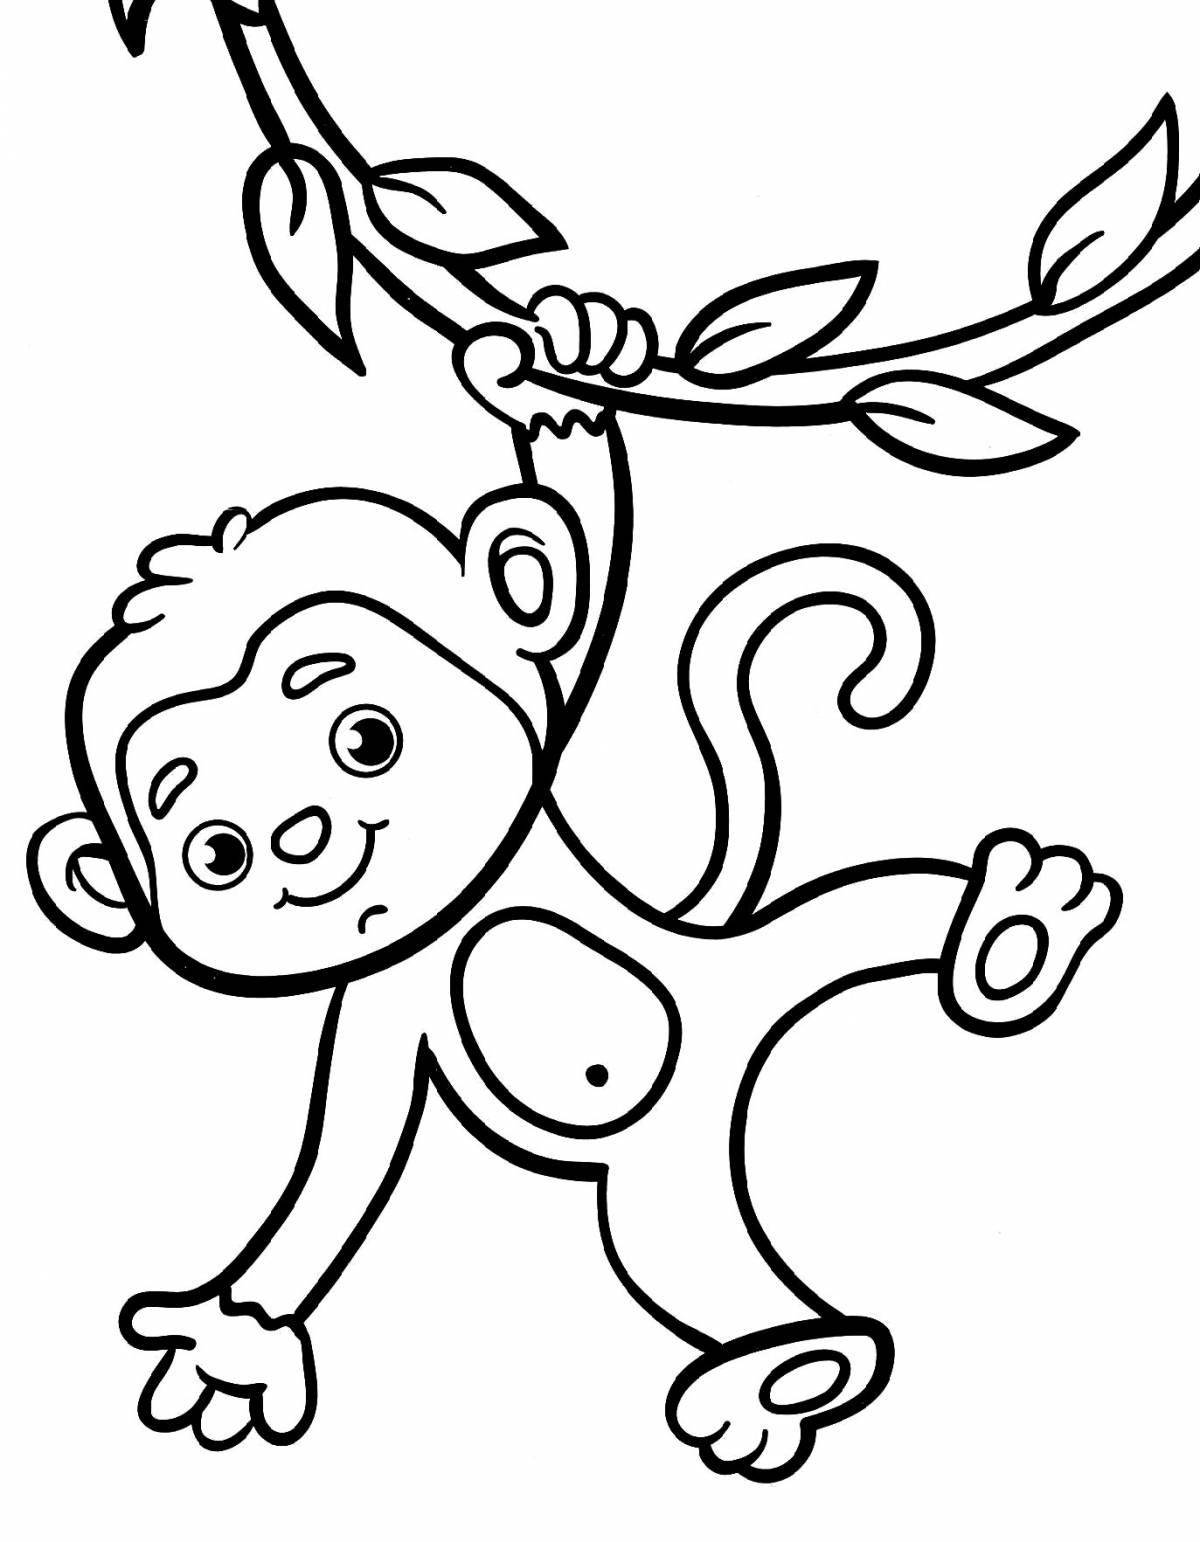 Бесплатные раскраски обезьяна. Распечатать раскраски бесплатно и скачать раскраски онлайн.